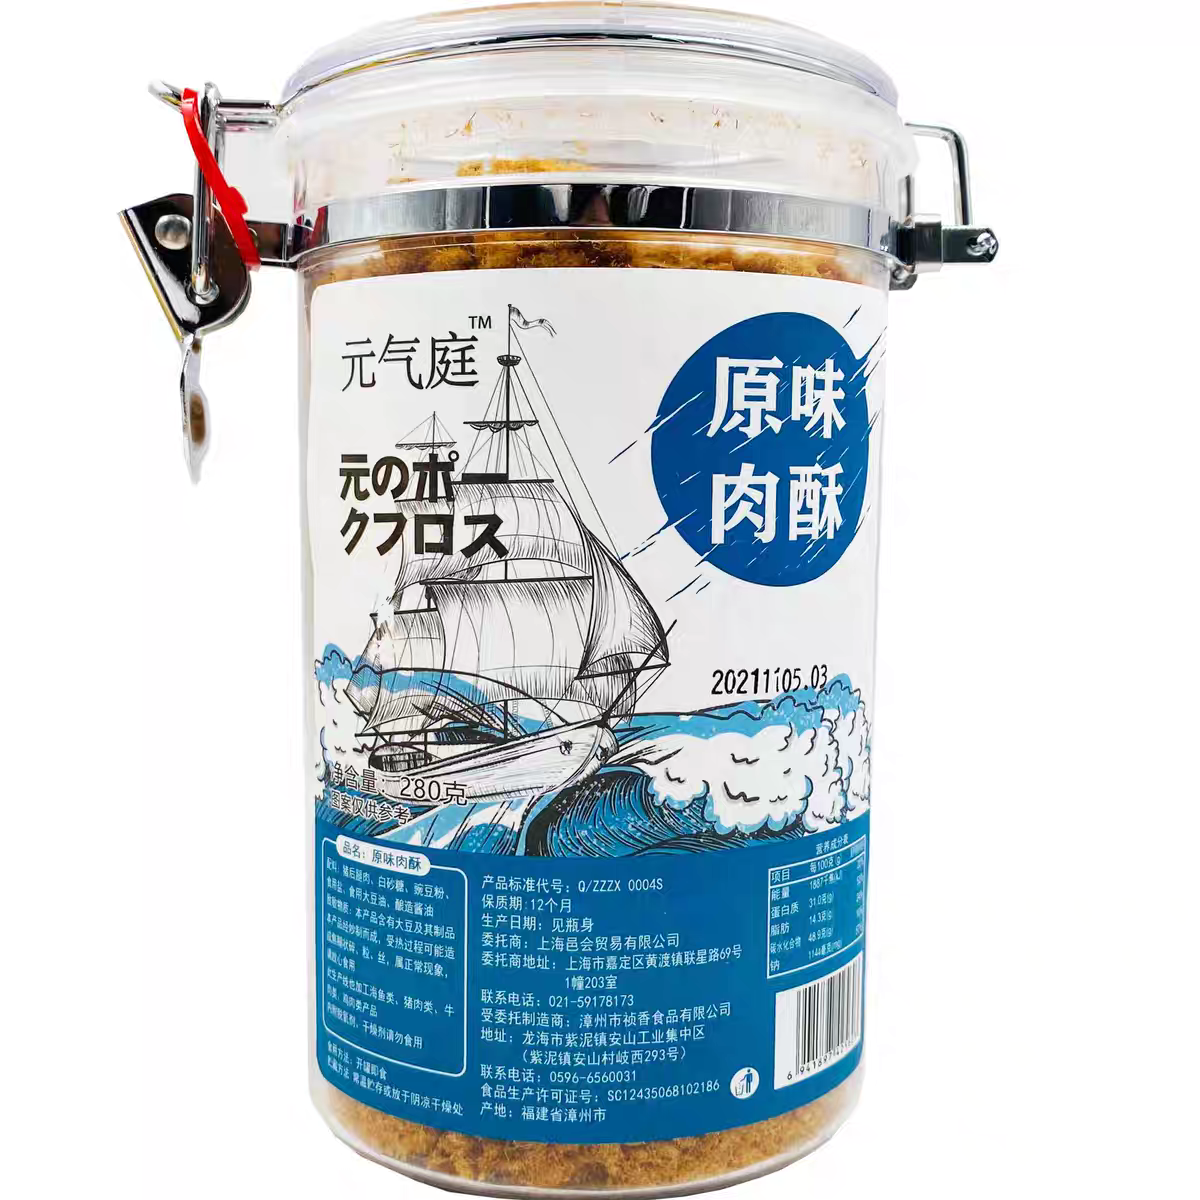 新品特卖原味鳕鱼/金枪鱼鱼松300g大罐装营养鱼肉松寿司拌饭